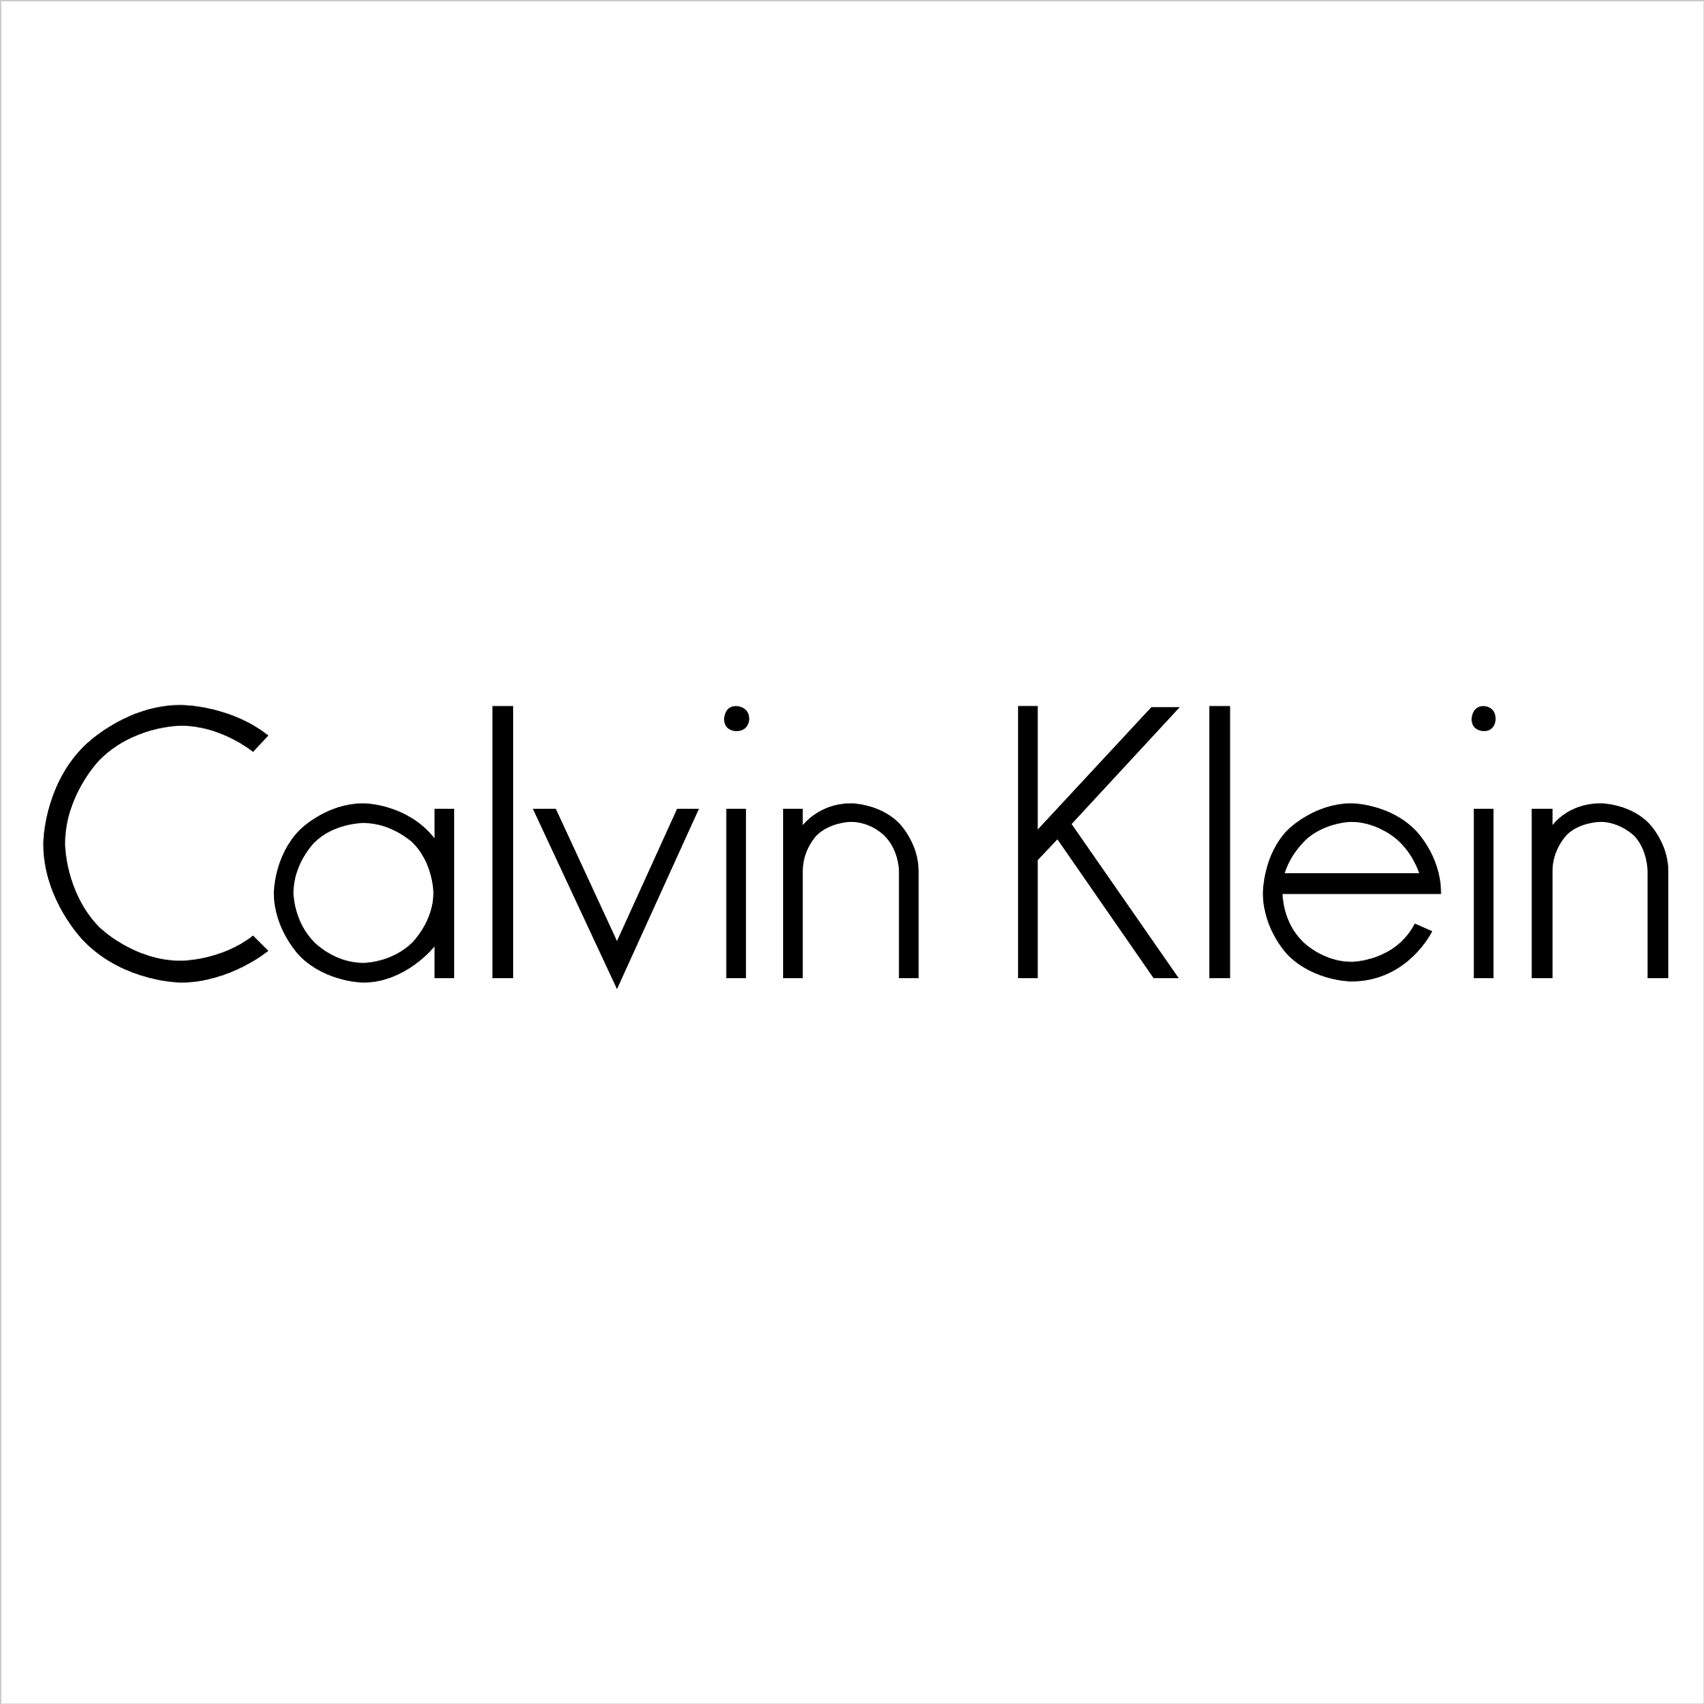 Calvin Klein官网 年末大促 男女服饰促销